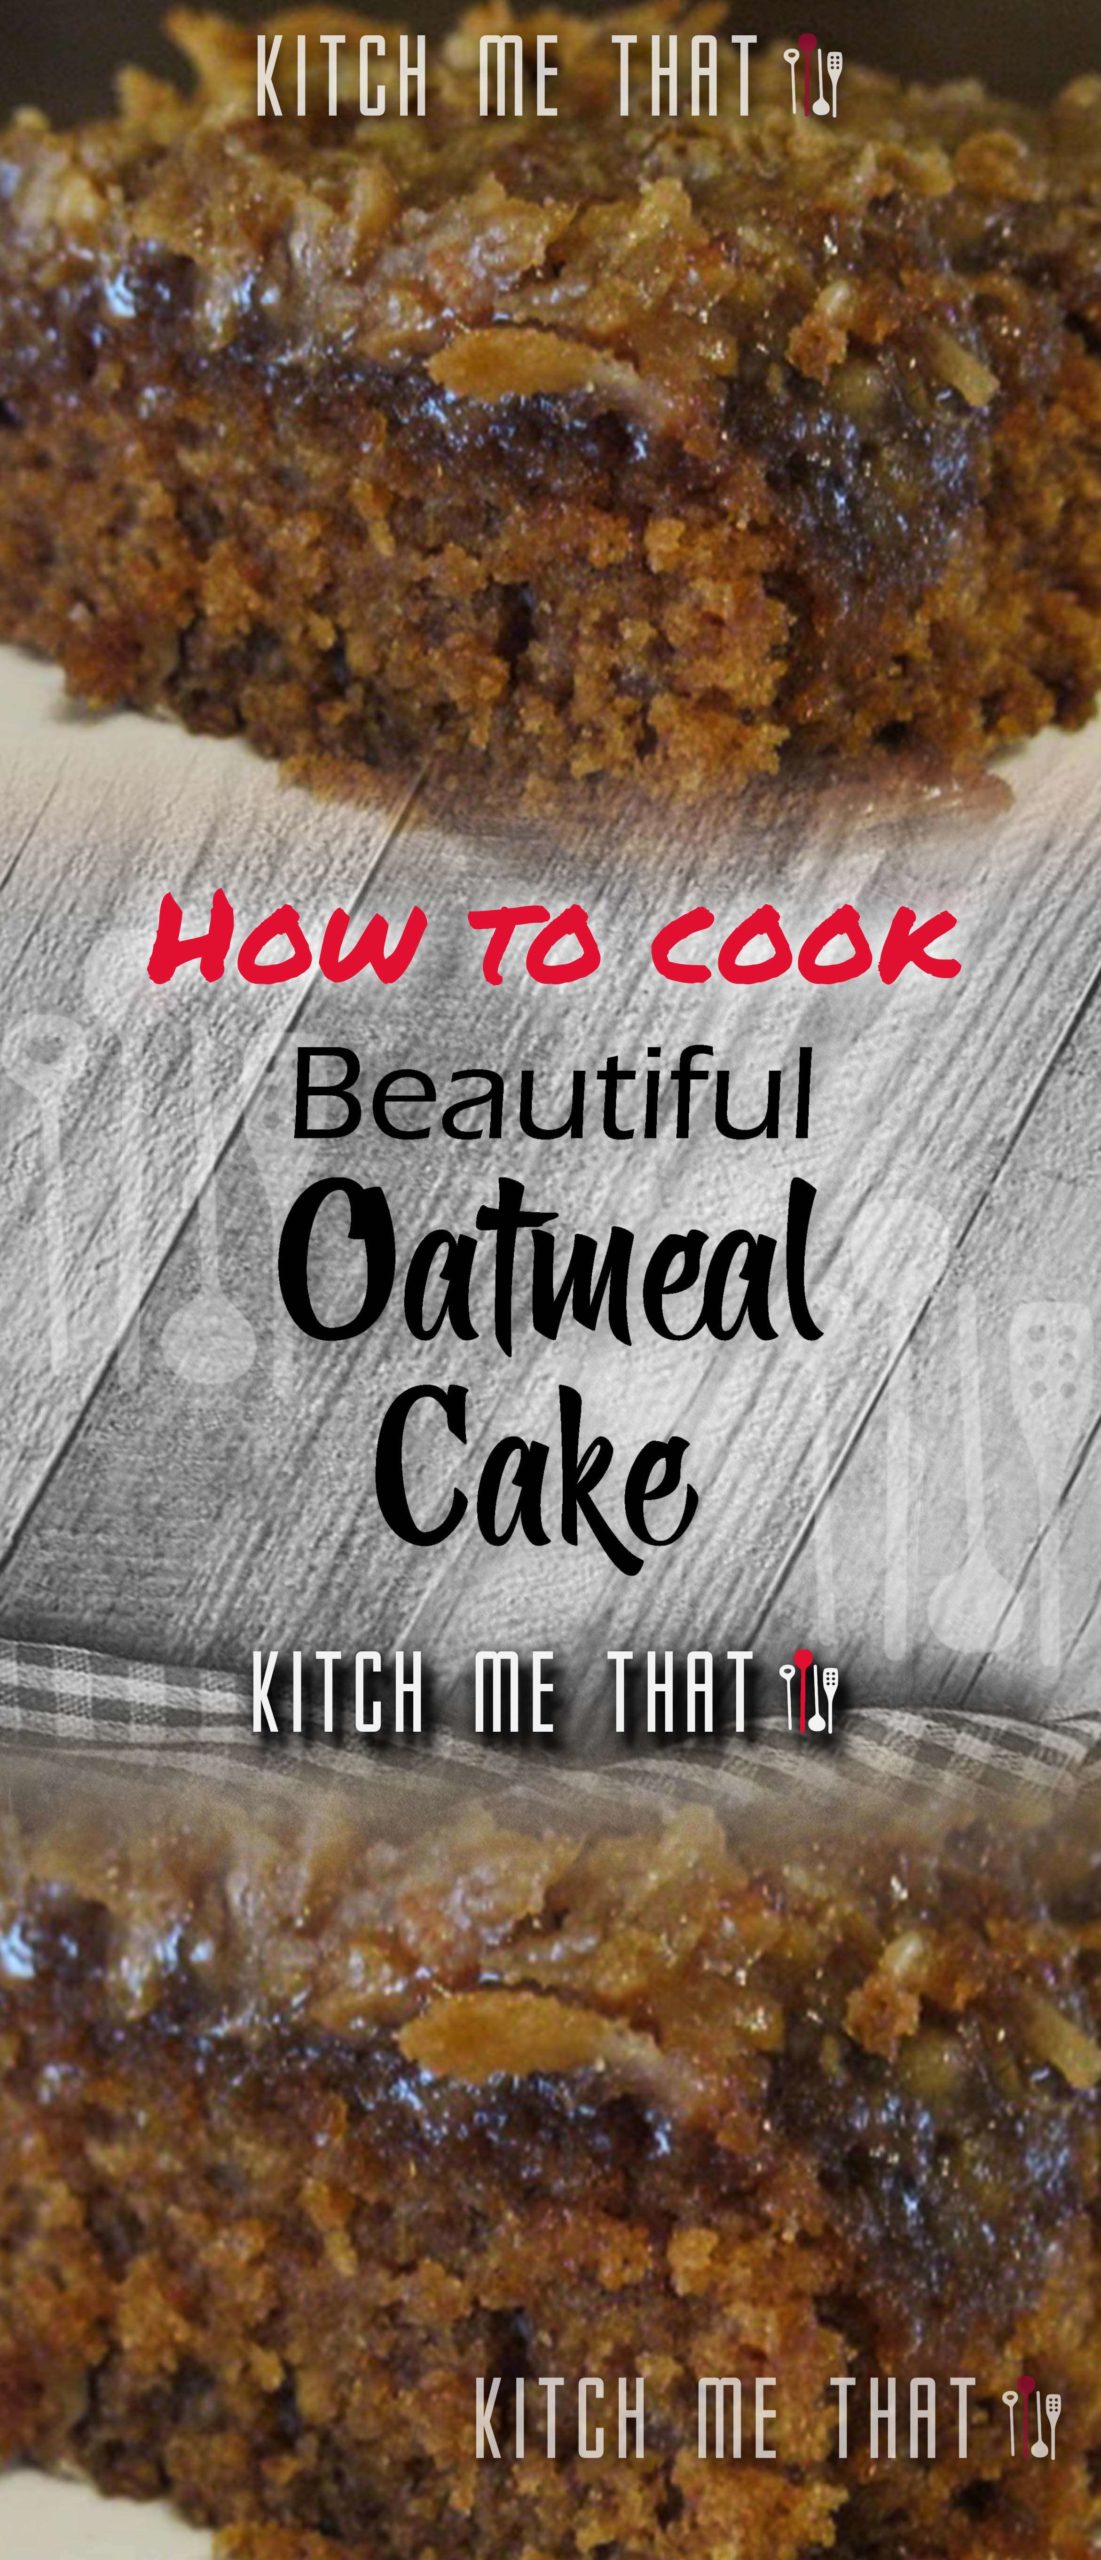 Oatmeal Cake